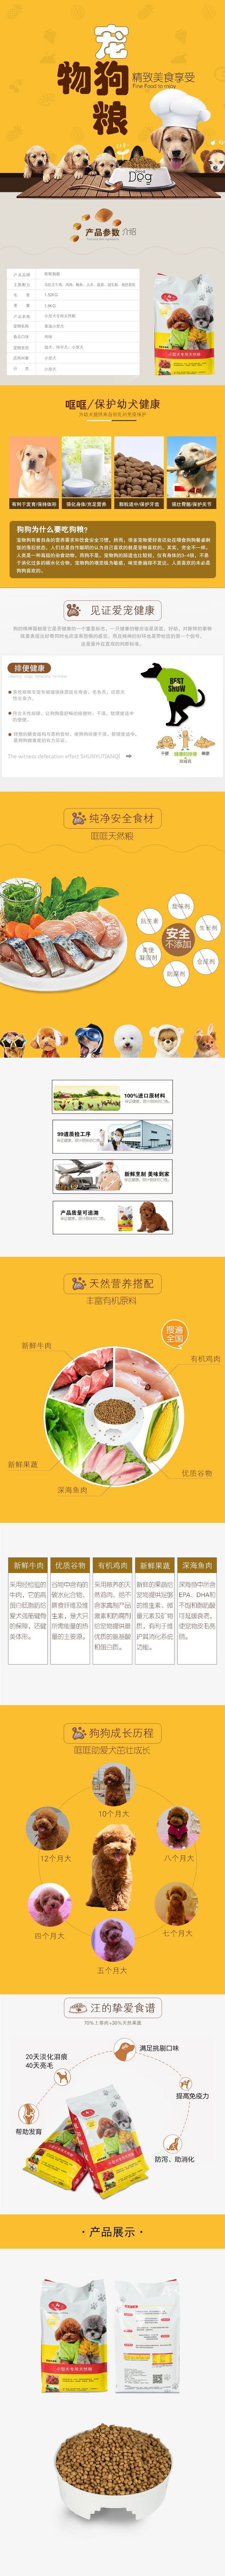 淘宝美工小玖玖哐哐宠物狗粮专用天然粮作品